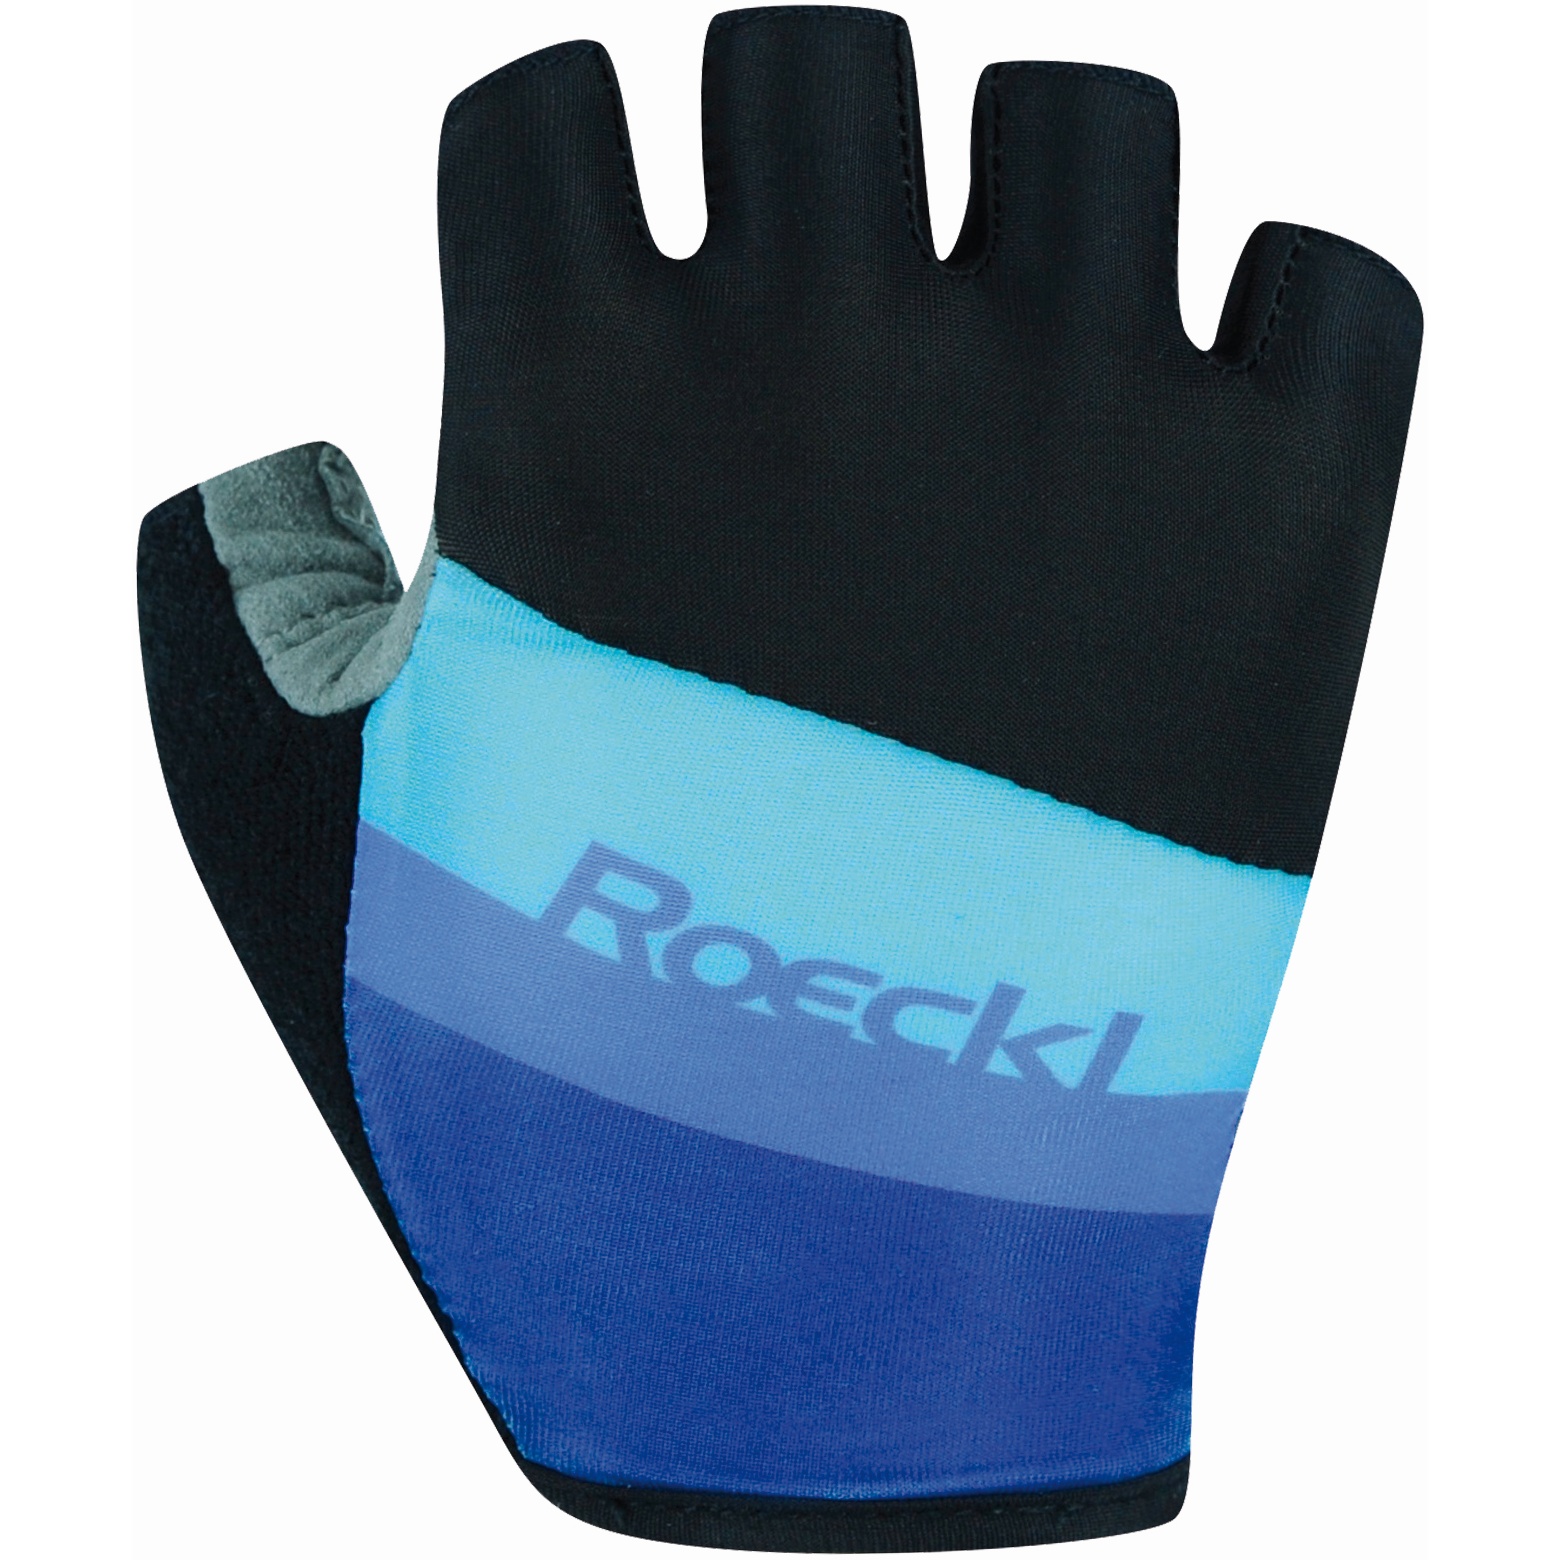 Produktbild von Roeckl Sports Ticino Kinder Fahrradhandschuhe - schwarz/blau 056